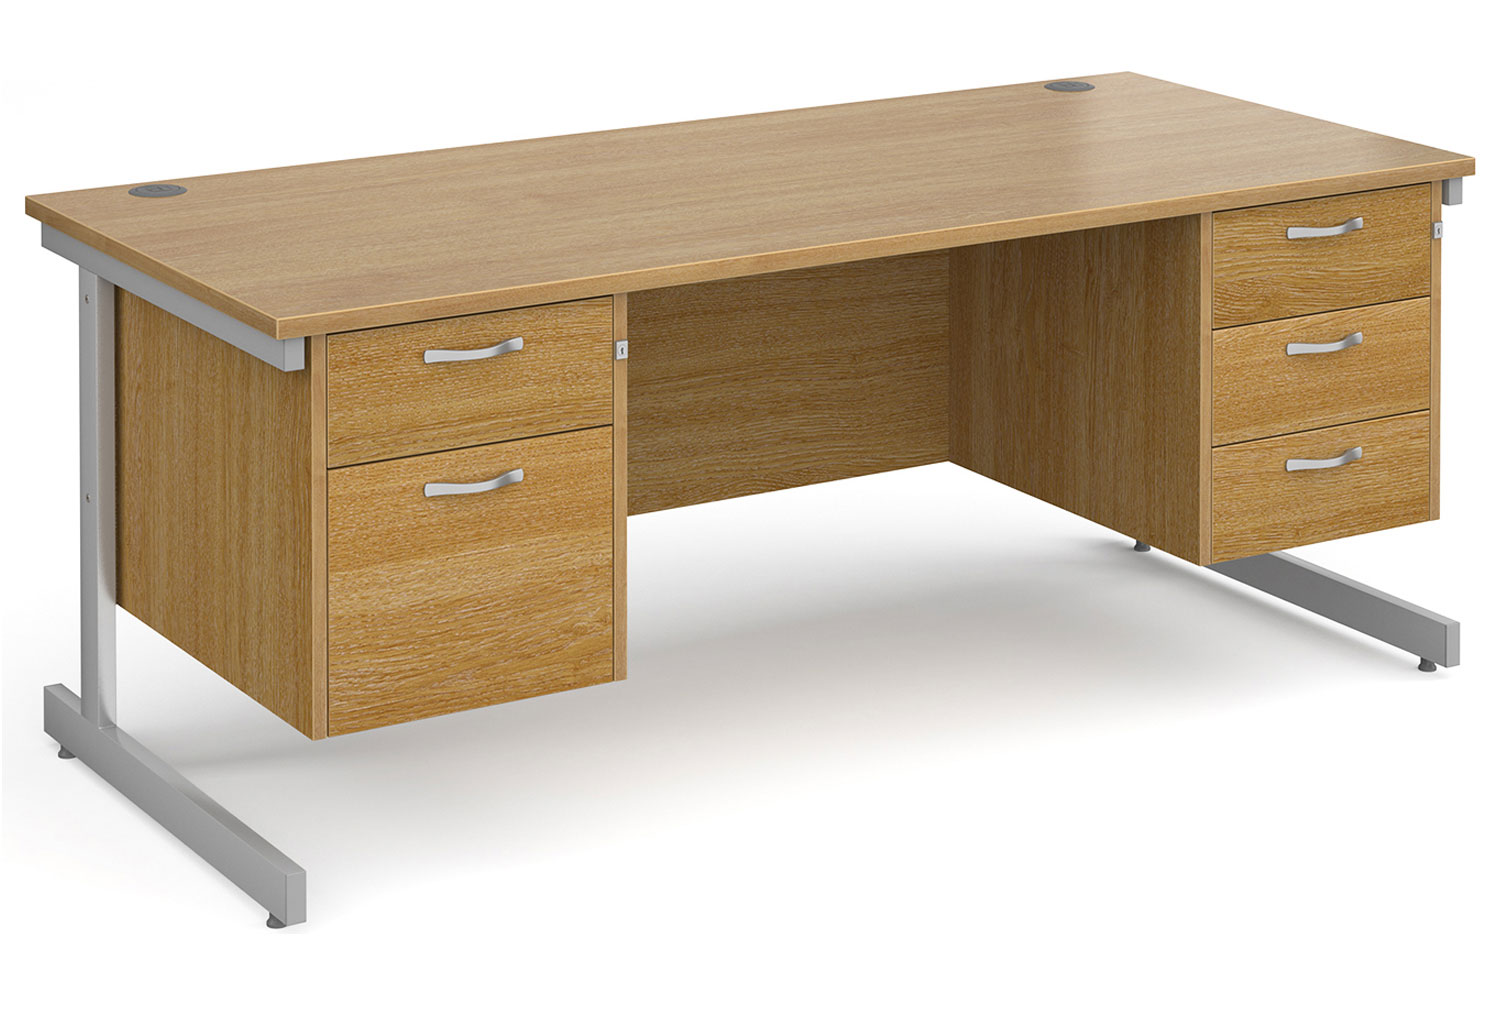 Tully I Rectangular Office Desk 2+3 Drawers, 180wx80dx73h (cm), Oak, Fully Installed